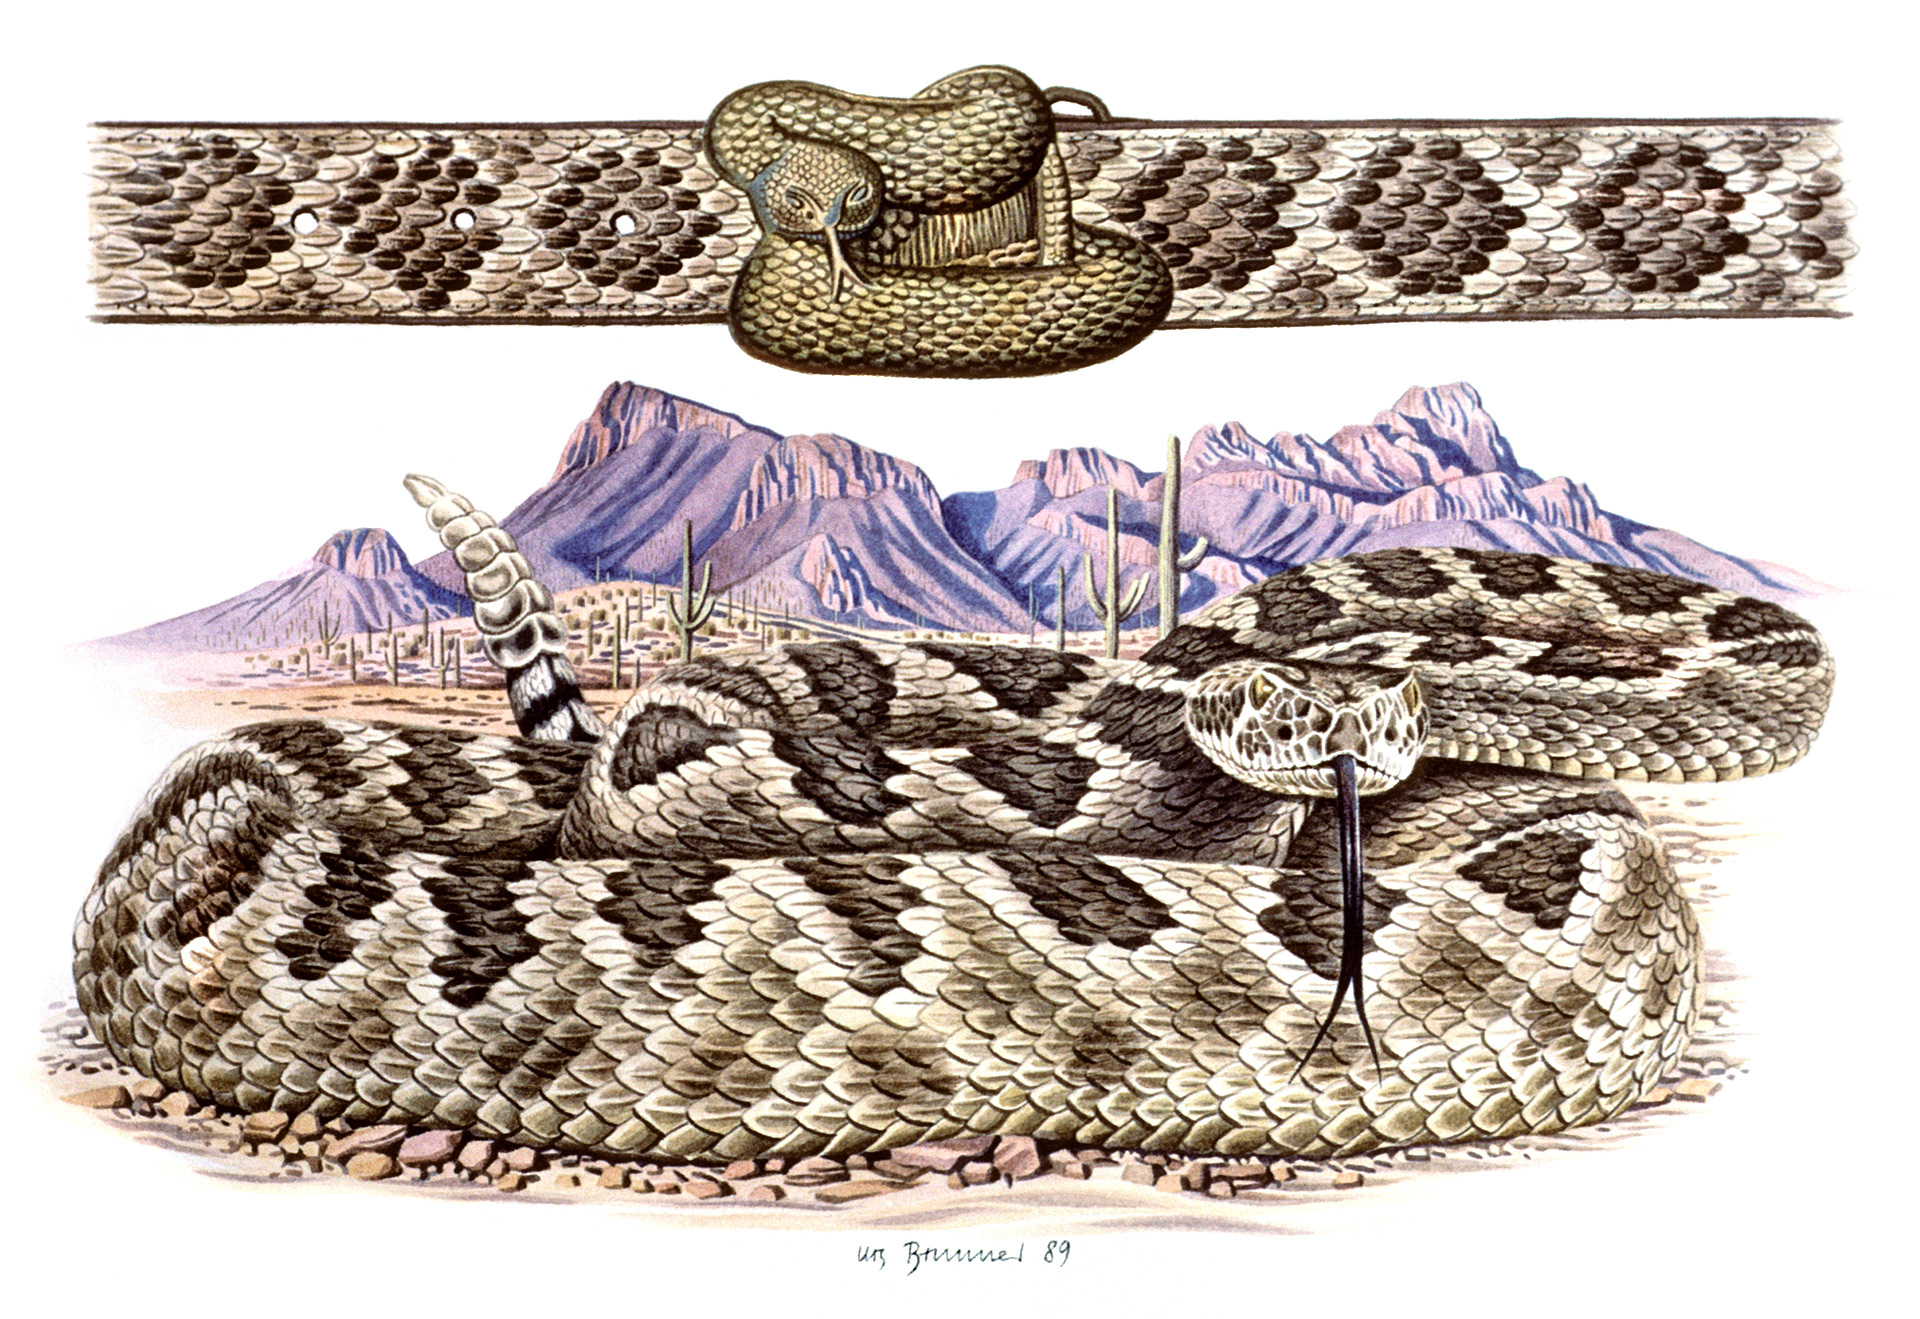 Western Wear / Klapperschlangen-Gurtschnalle, 1989, Aquarell auf Papier, 23 x 35 cm